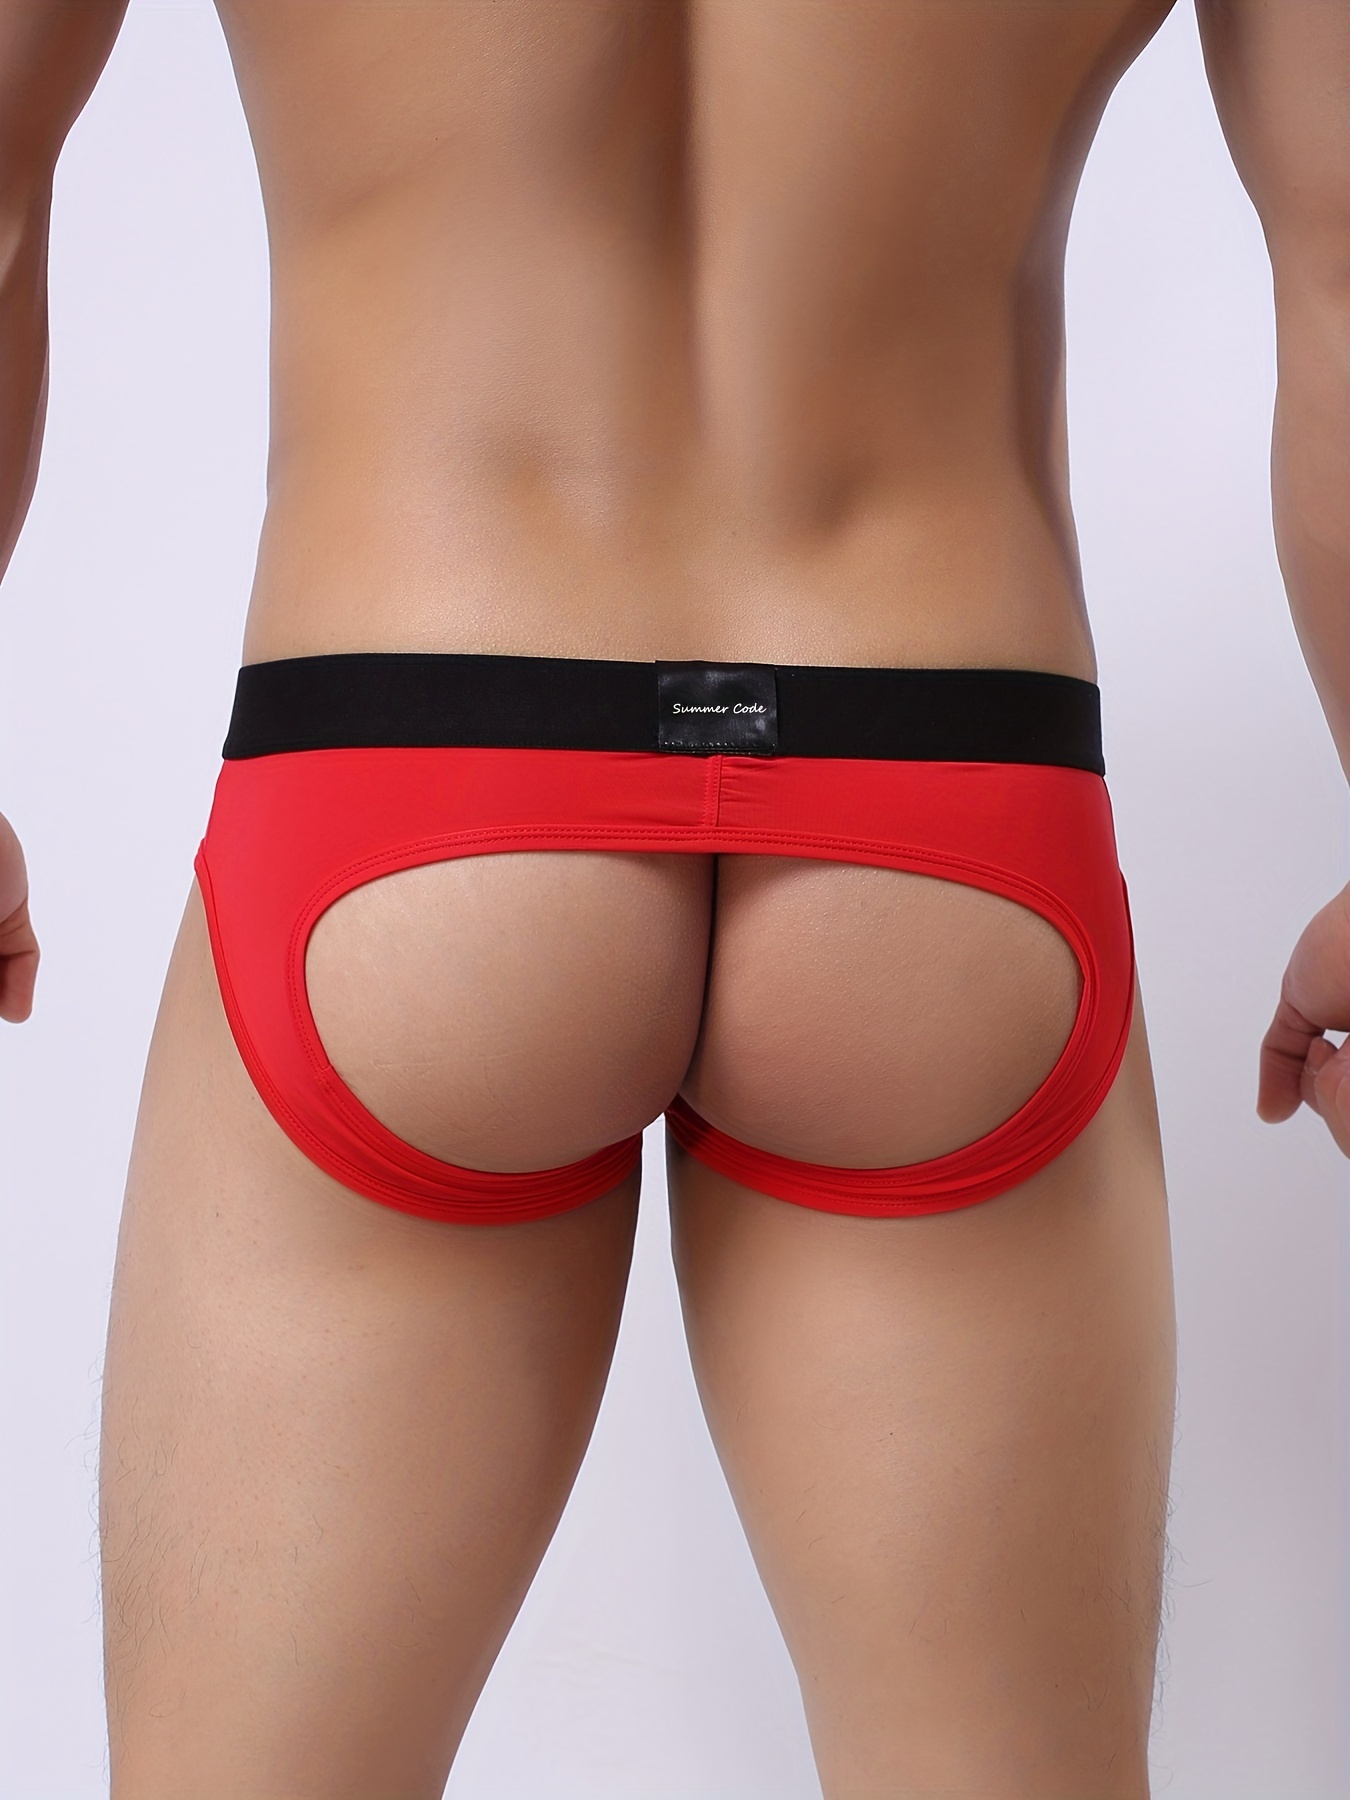 Jockstrap Athletic Supporters Men Jock Strap Male Underwear - Temu